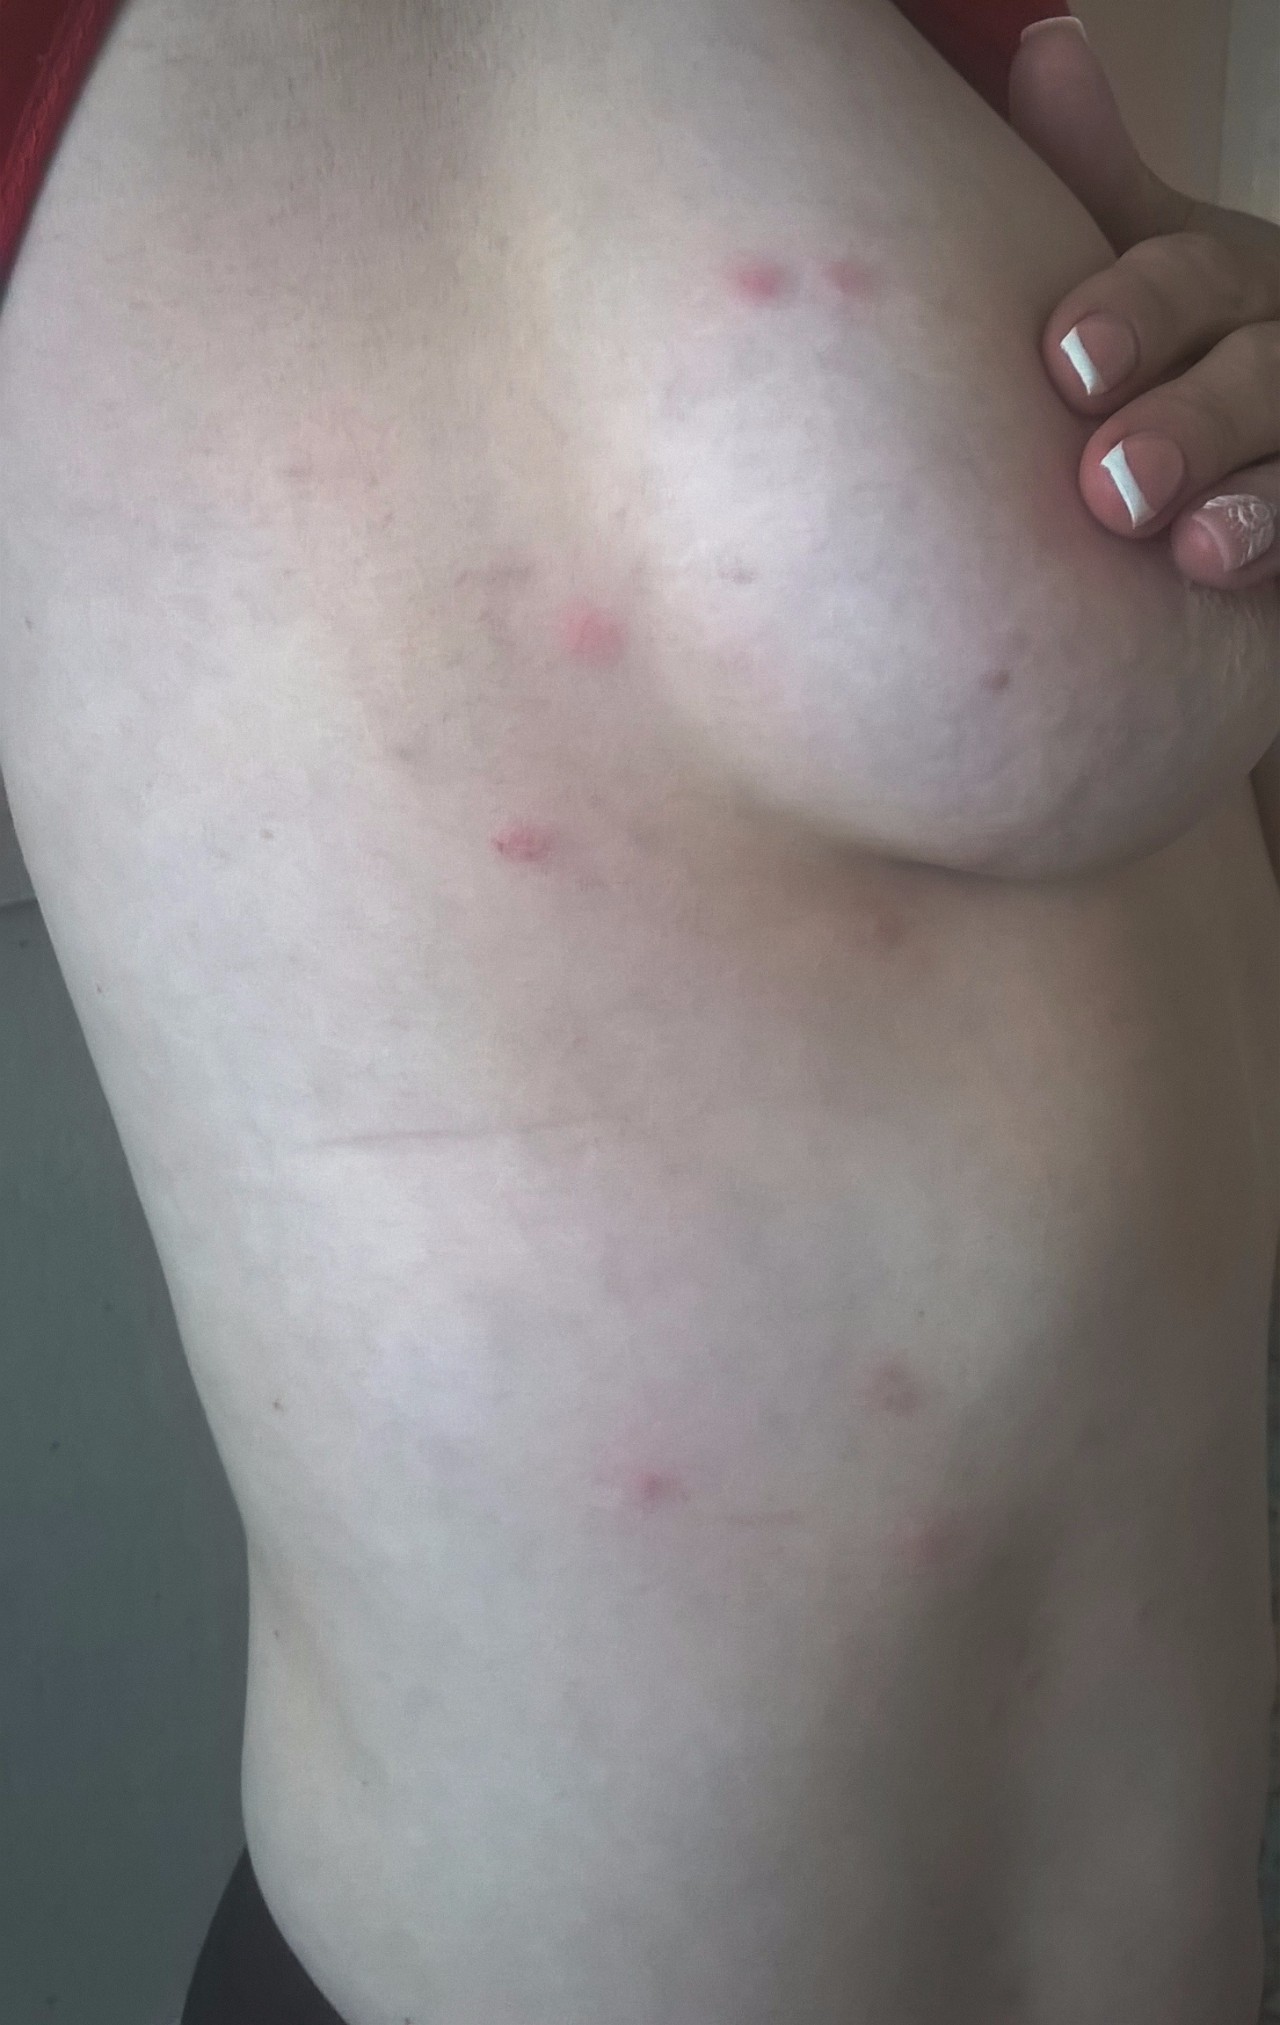 красные высыпания на груди у женщин фото 12